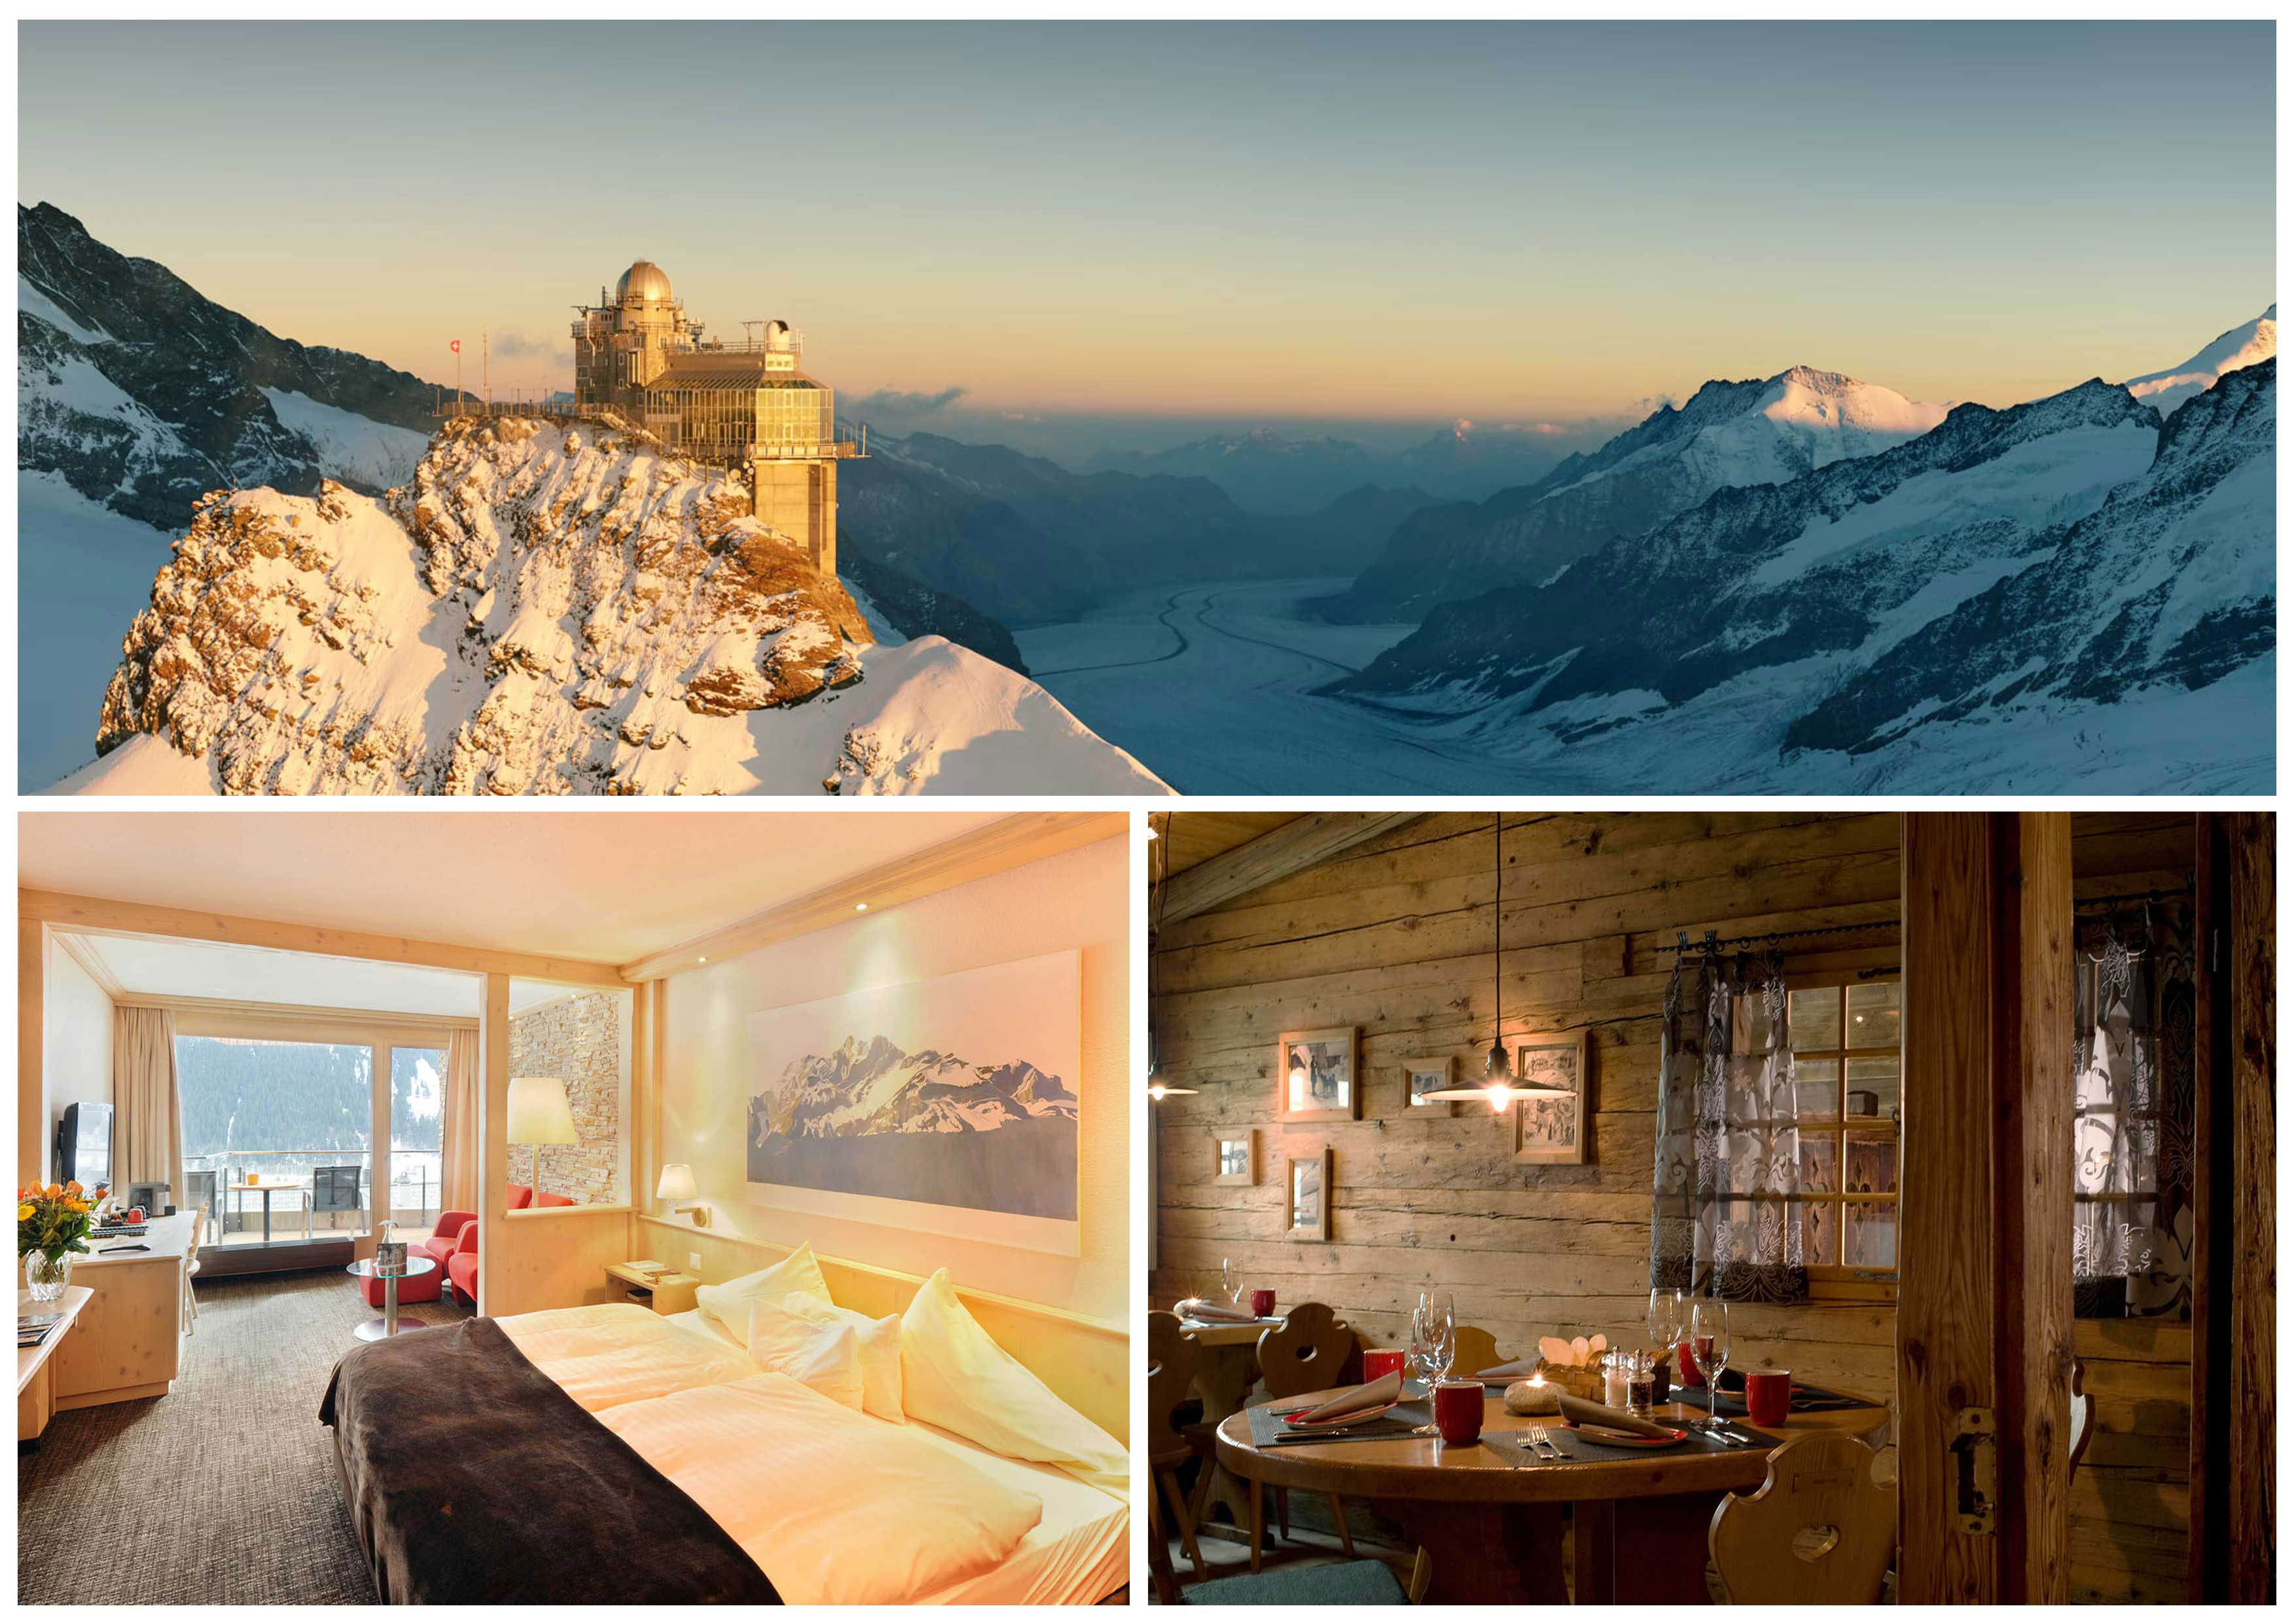 La regione della Jungfrau: un mondo tutto suo - Non a caso descriviamo la regione della Jungfrau come 